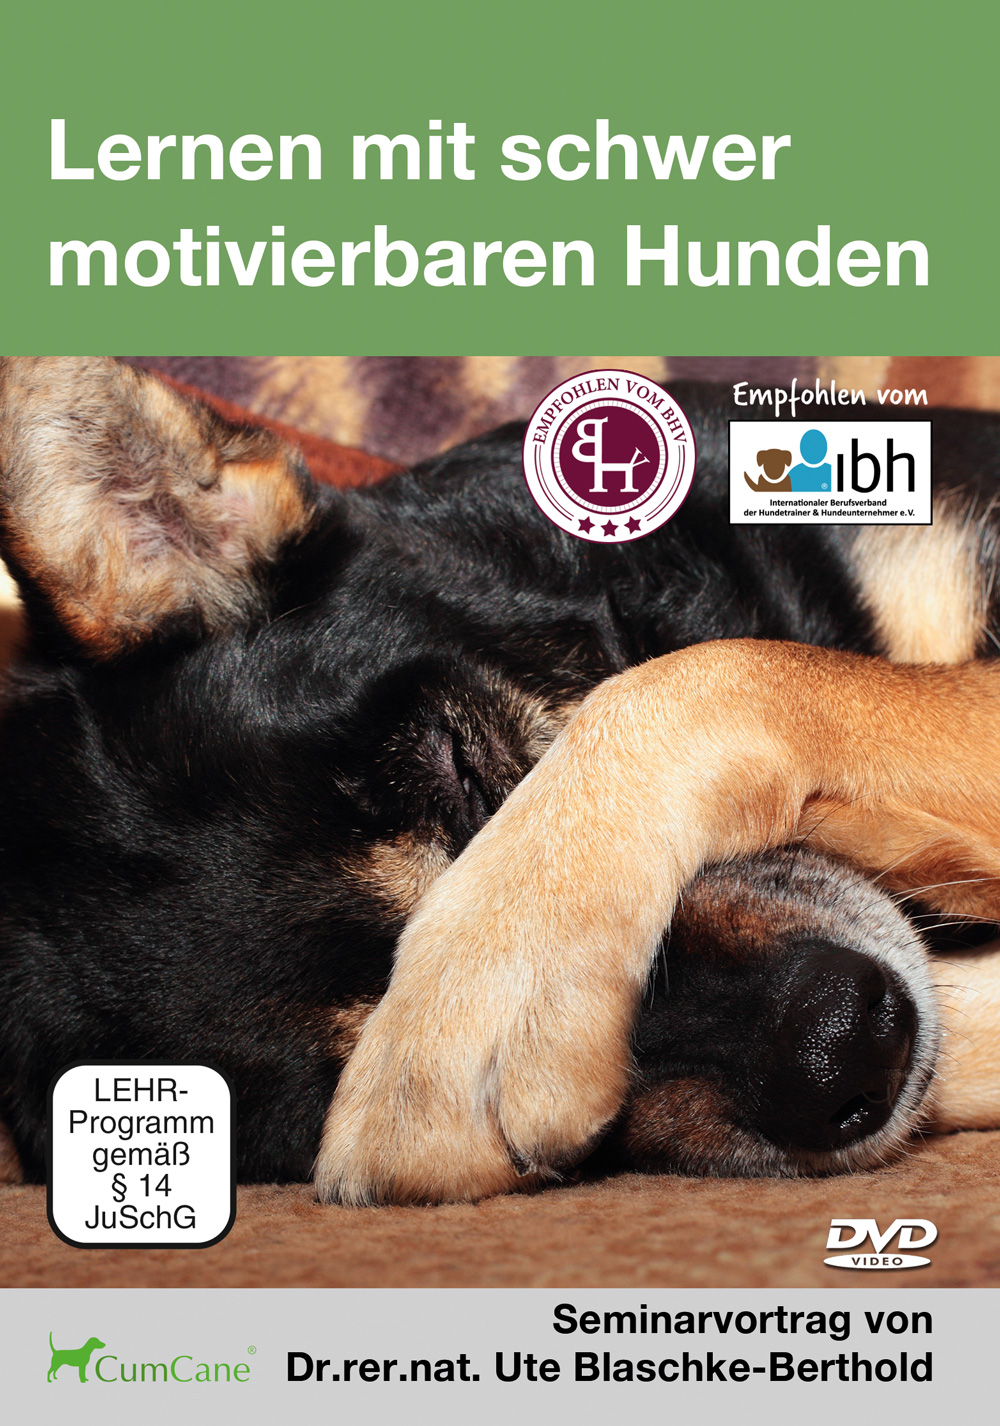 2019 Lernen mit schwer motivierbaren Hunden DVD Cover